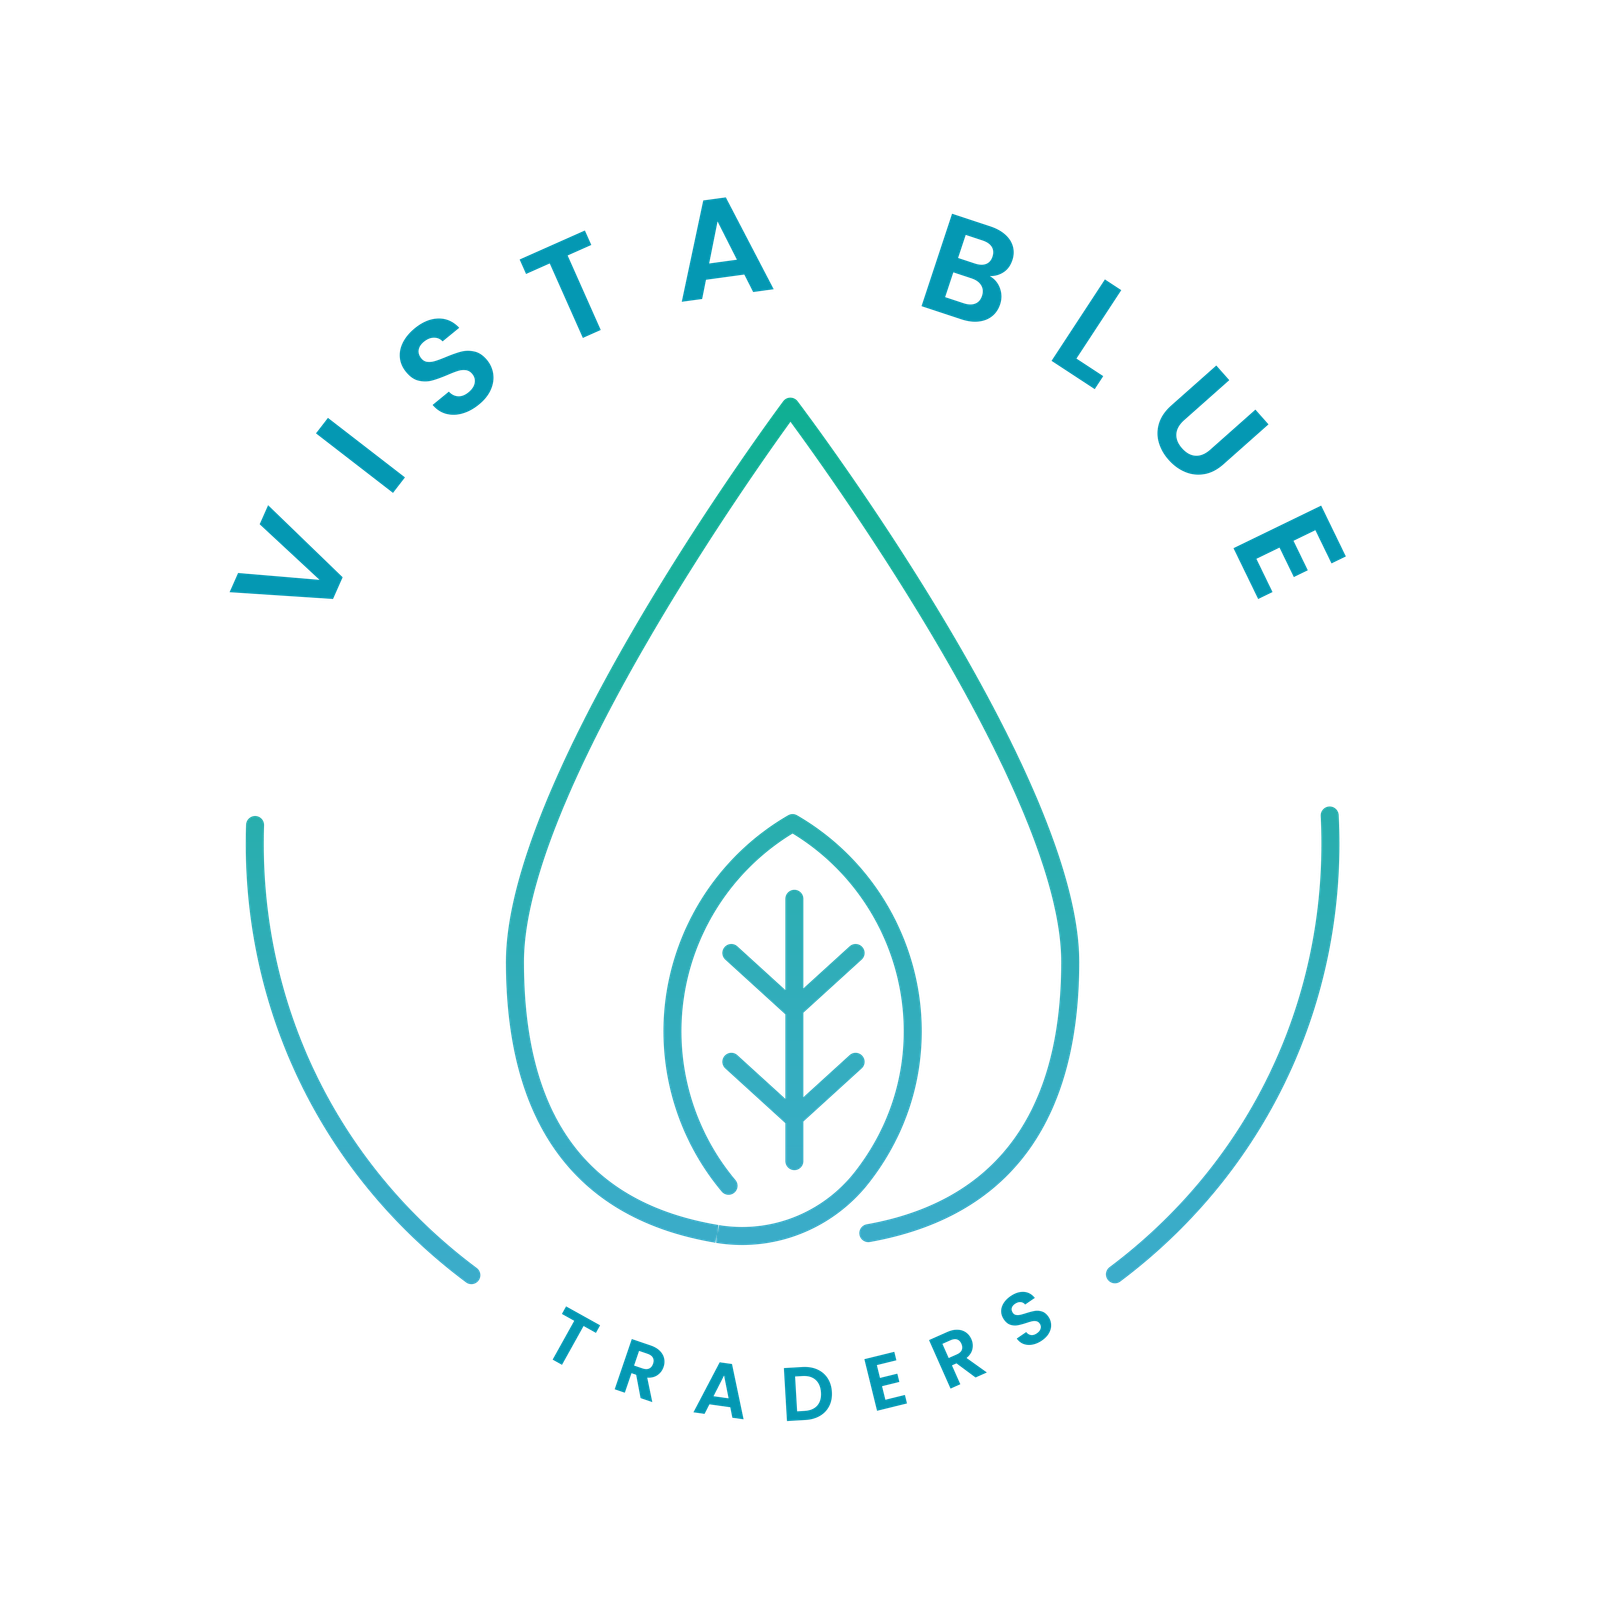 Vista Blue Traders